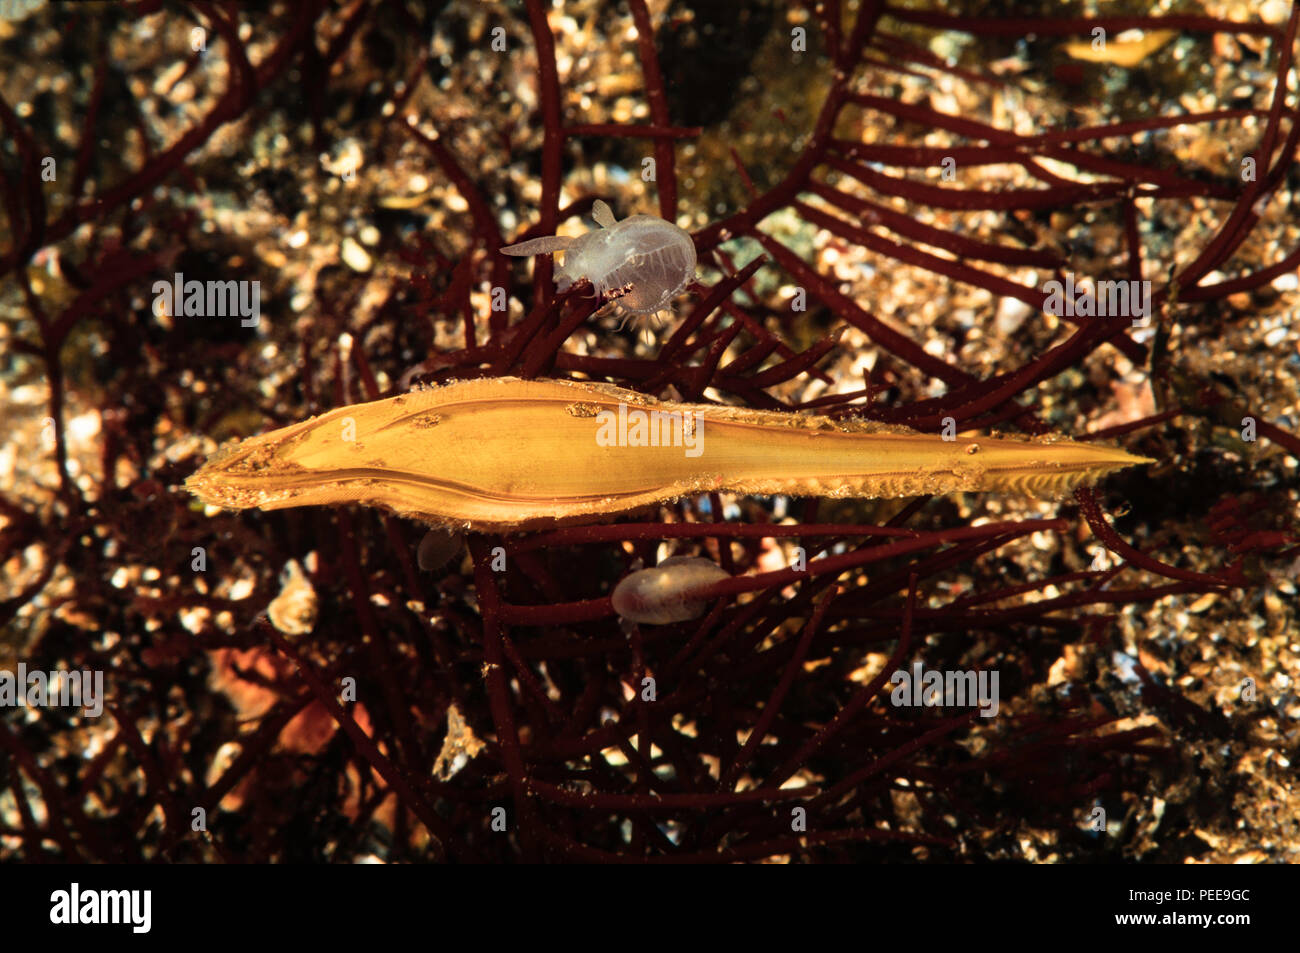 Questo è il caso di uova di un ratfish, Hydrolagus collei. Un adulto ratfish è quasi un metro di lunghezza e correlati a squali. La British Columbia, Canada. Foto Stock